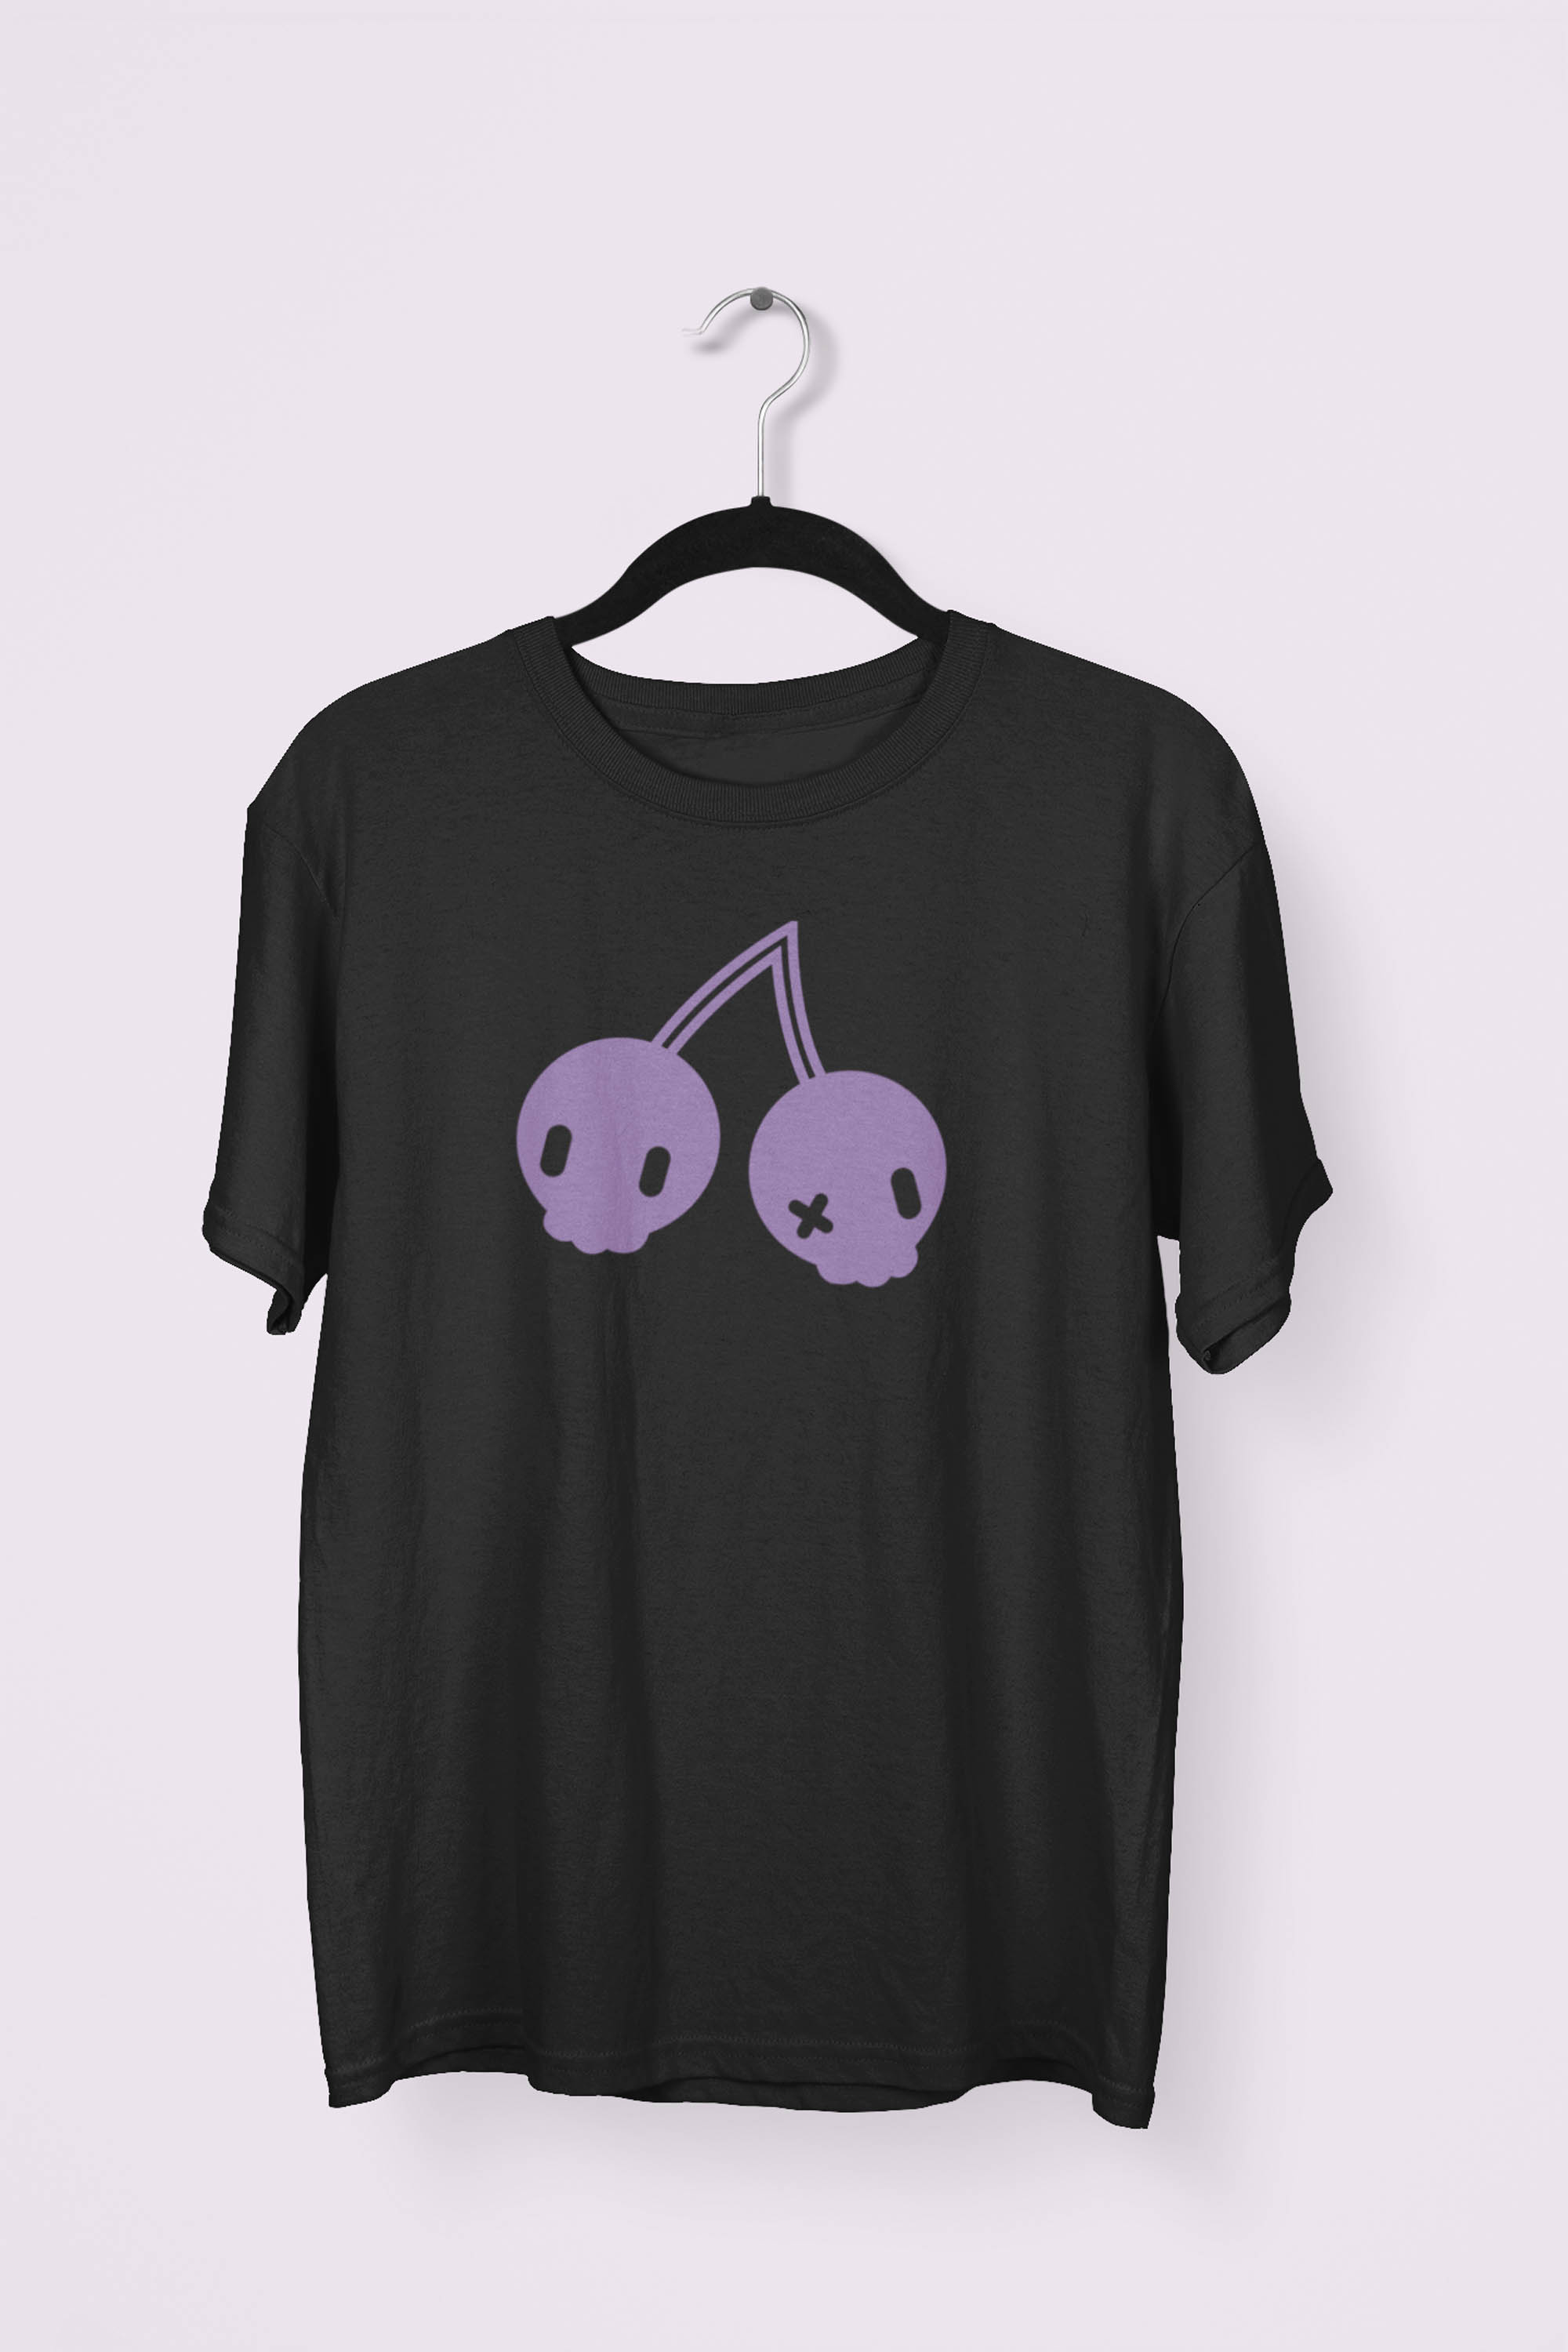 Cherry Skulls T-shirt by Dokkirii - Purple/Black